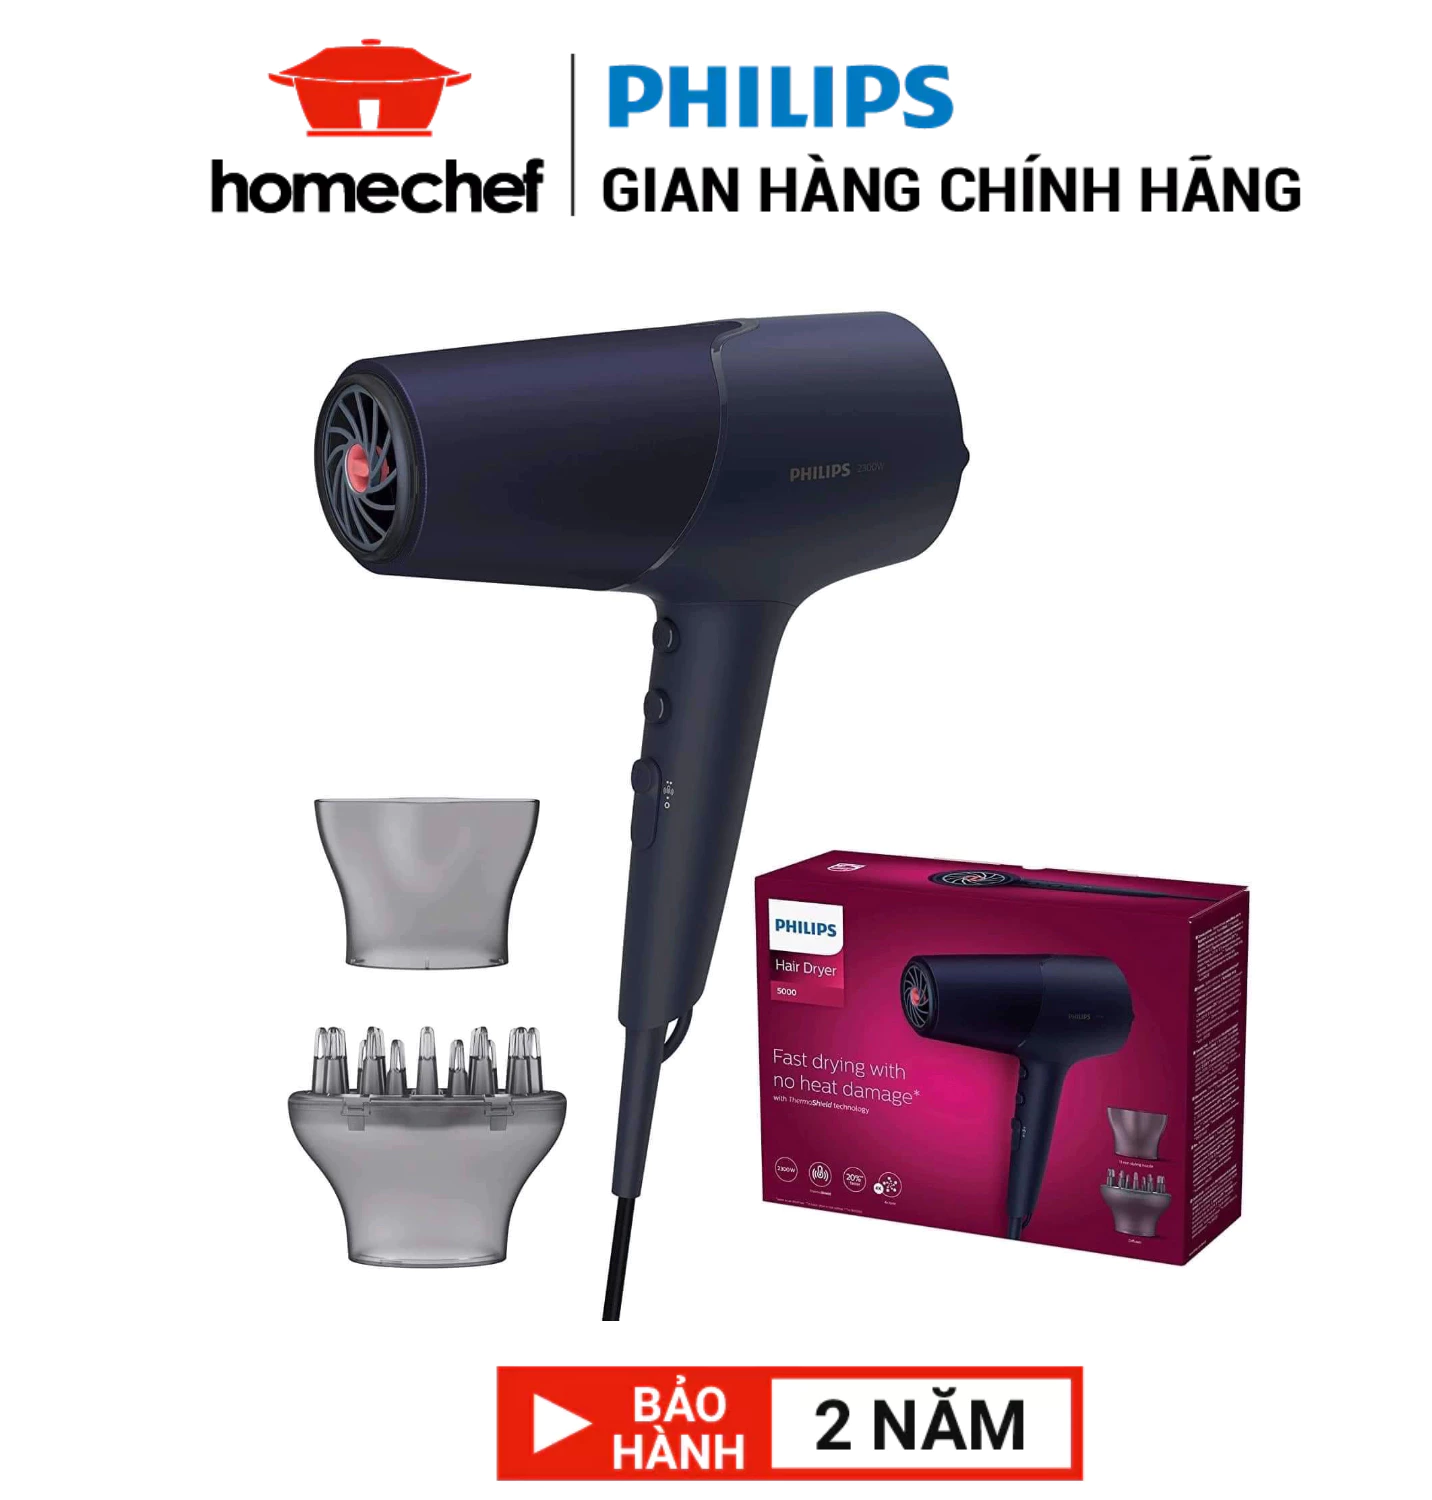 Máy sấy tóc Philips công suất 2300W an toàn cho tóc chống quá nhiệt bảo hành 2 năm chính hãng - BHD510/00